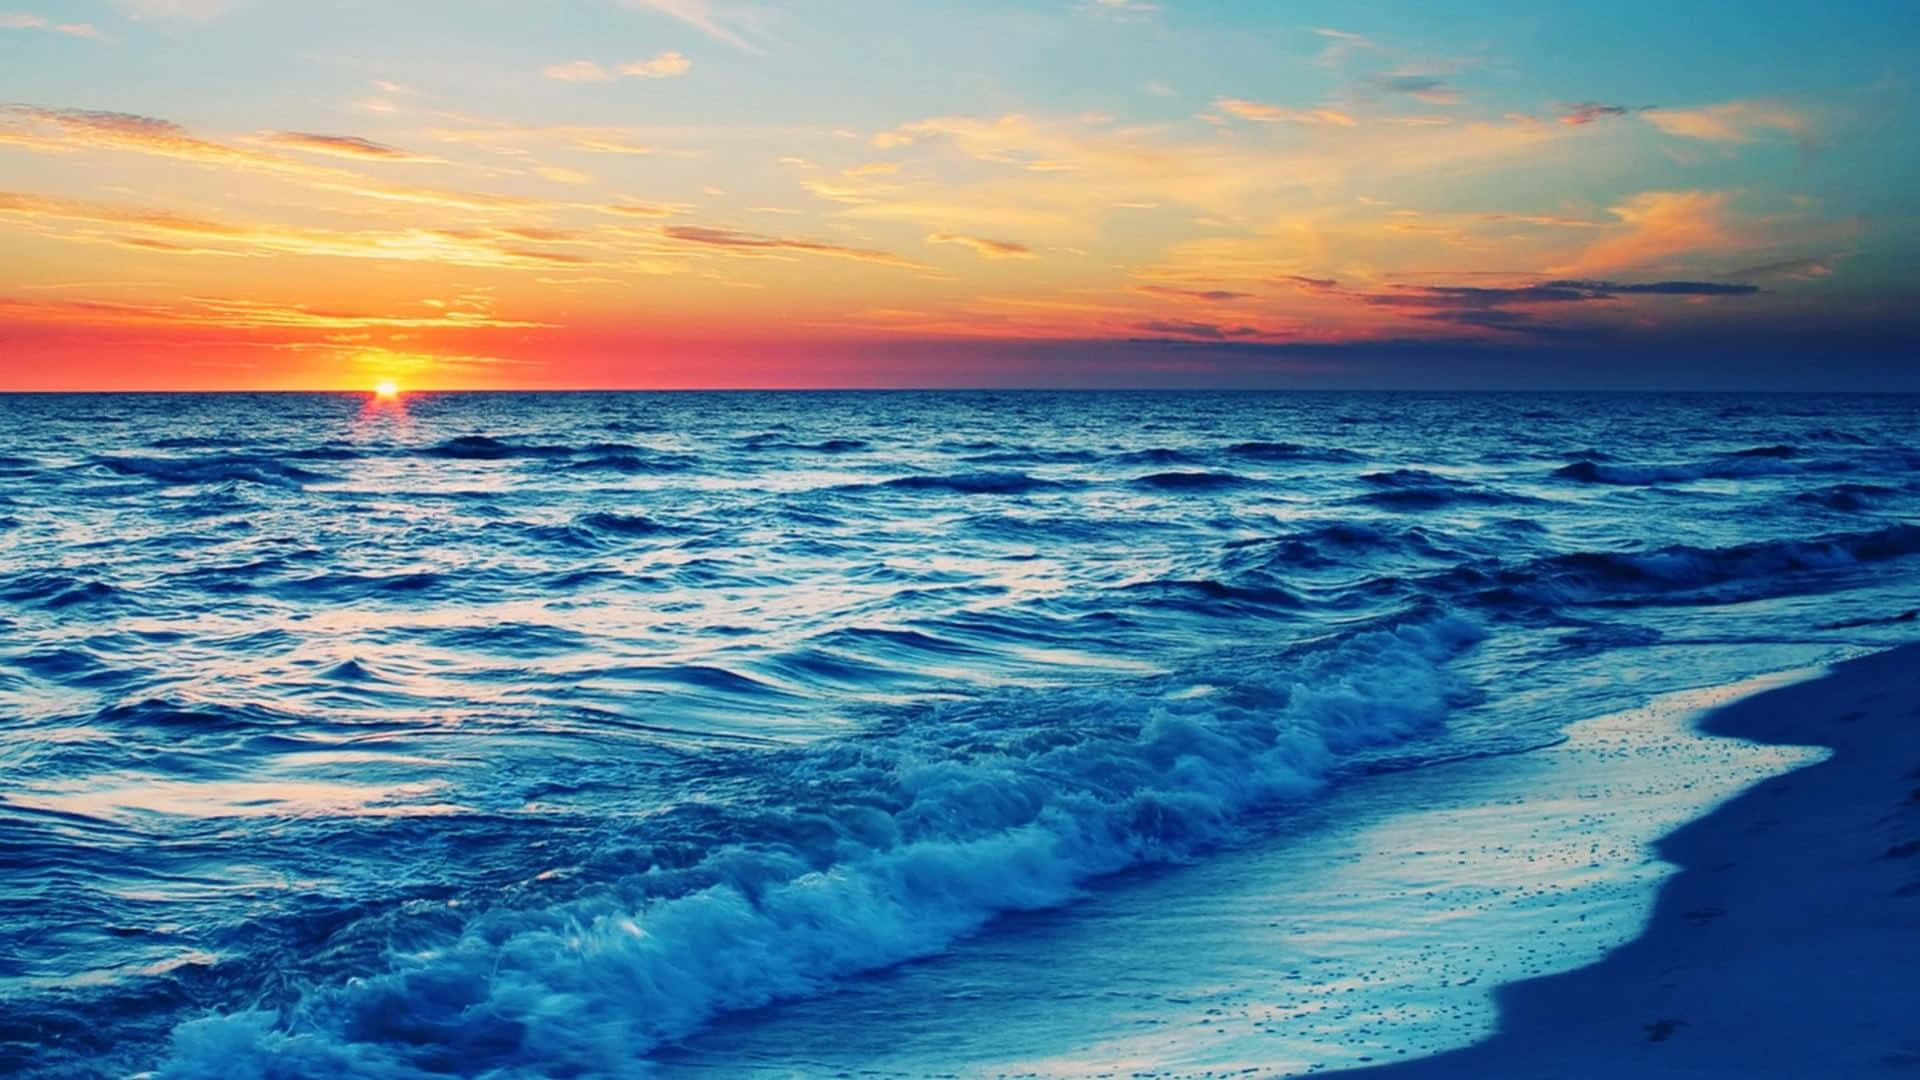 A golden sunset over a serene beach Wallpaper